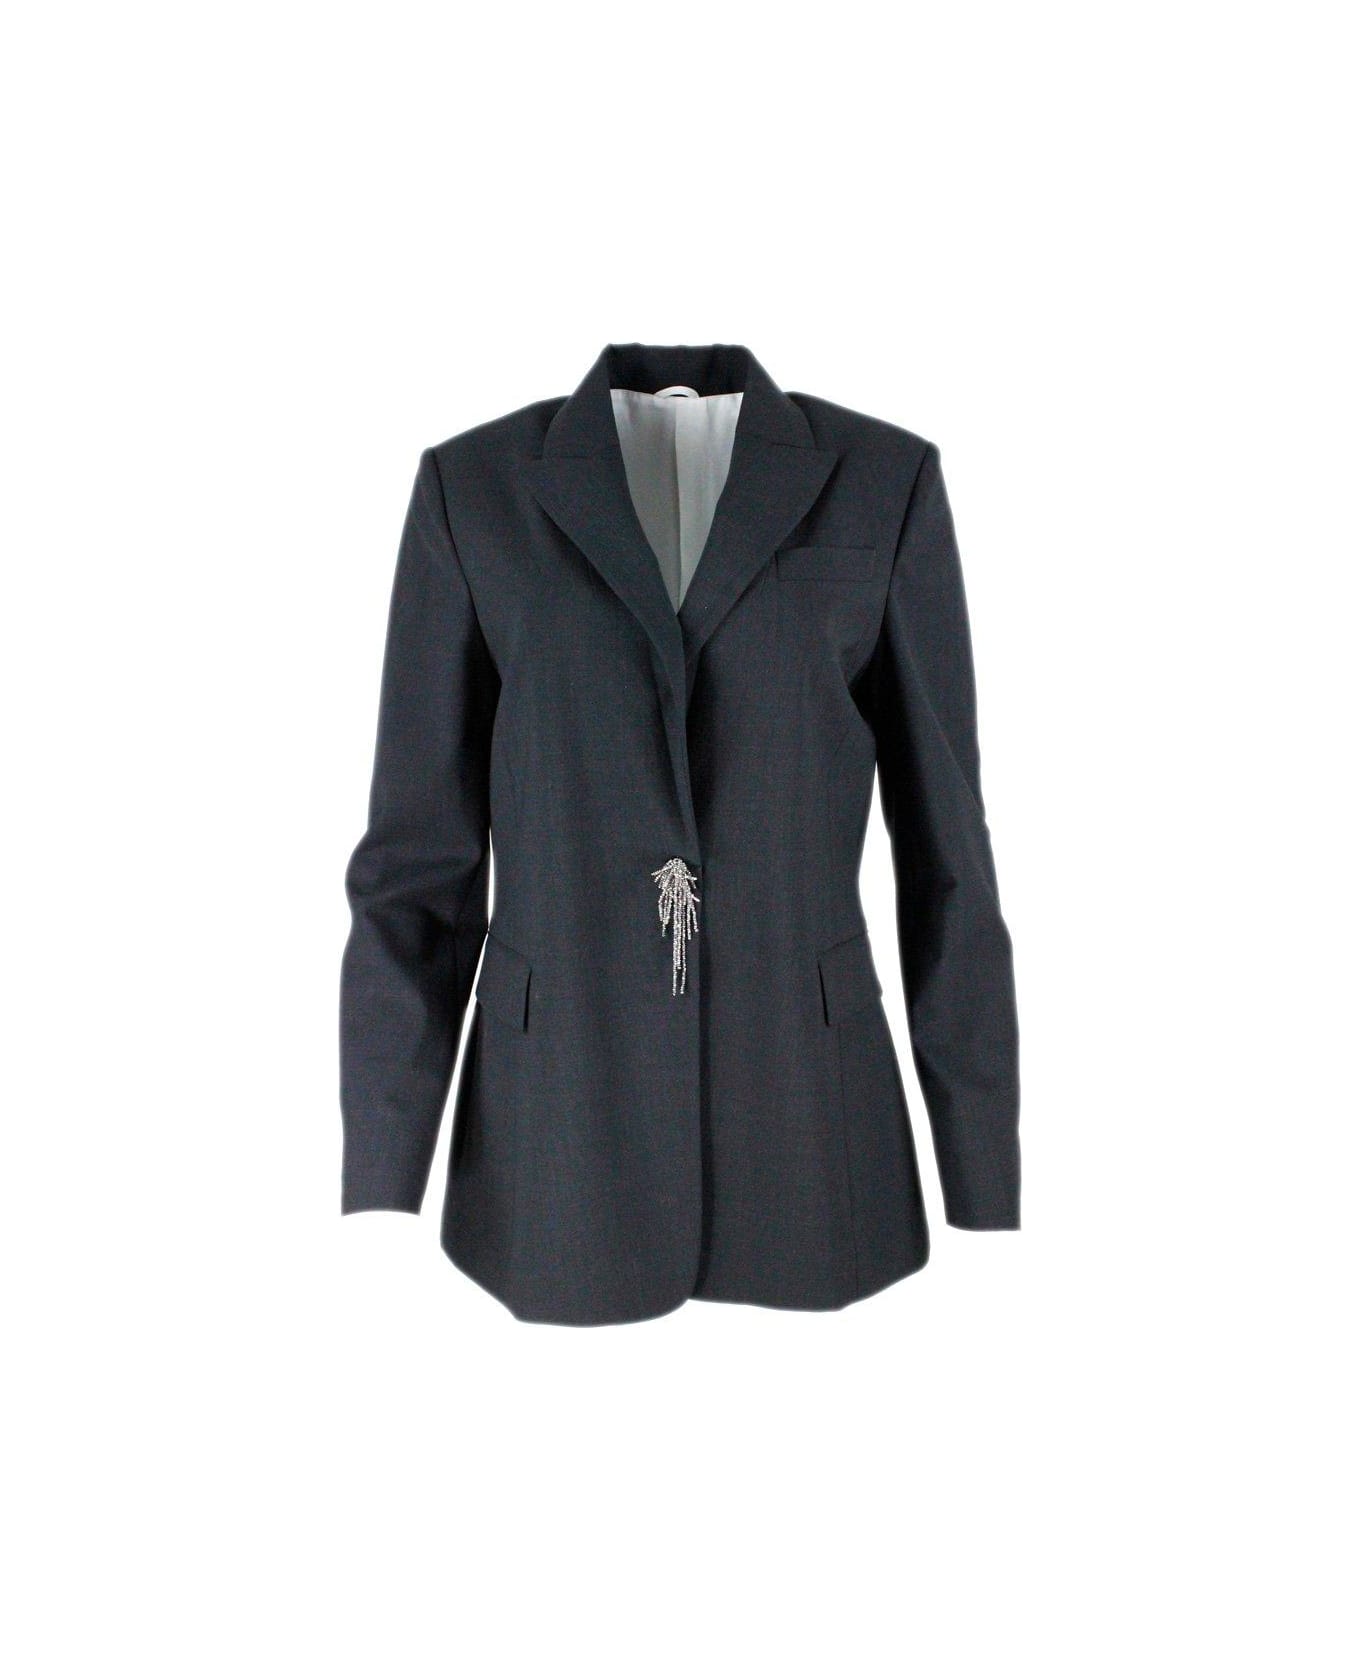 Brunello Cucinelli Pin Embellished Tailored Blazer - Grey Dark